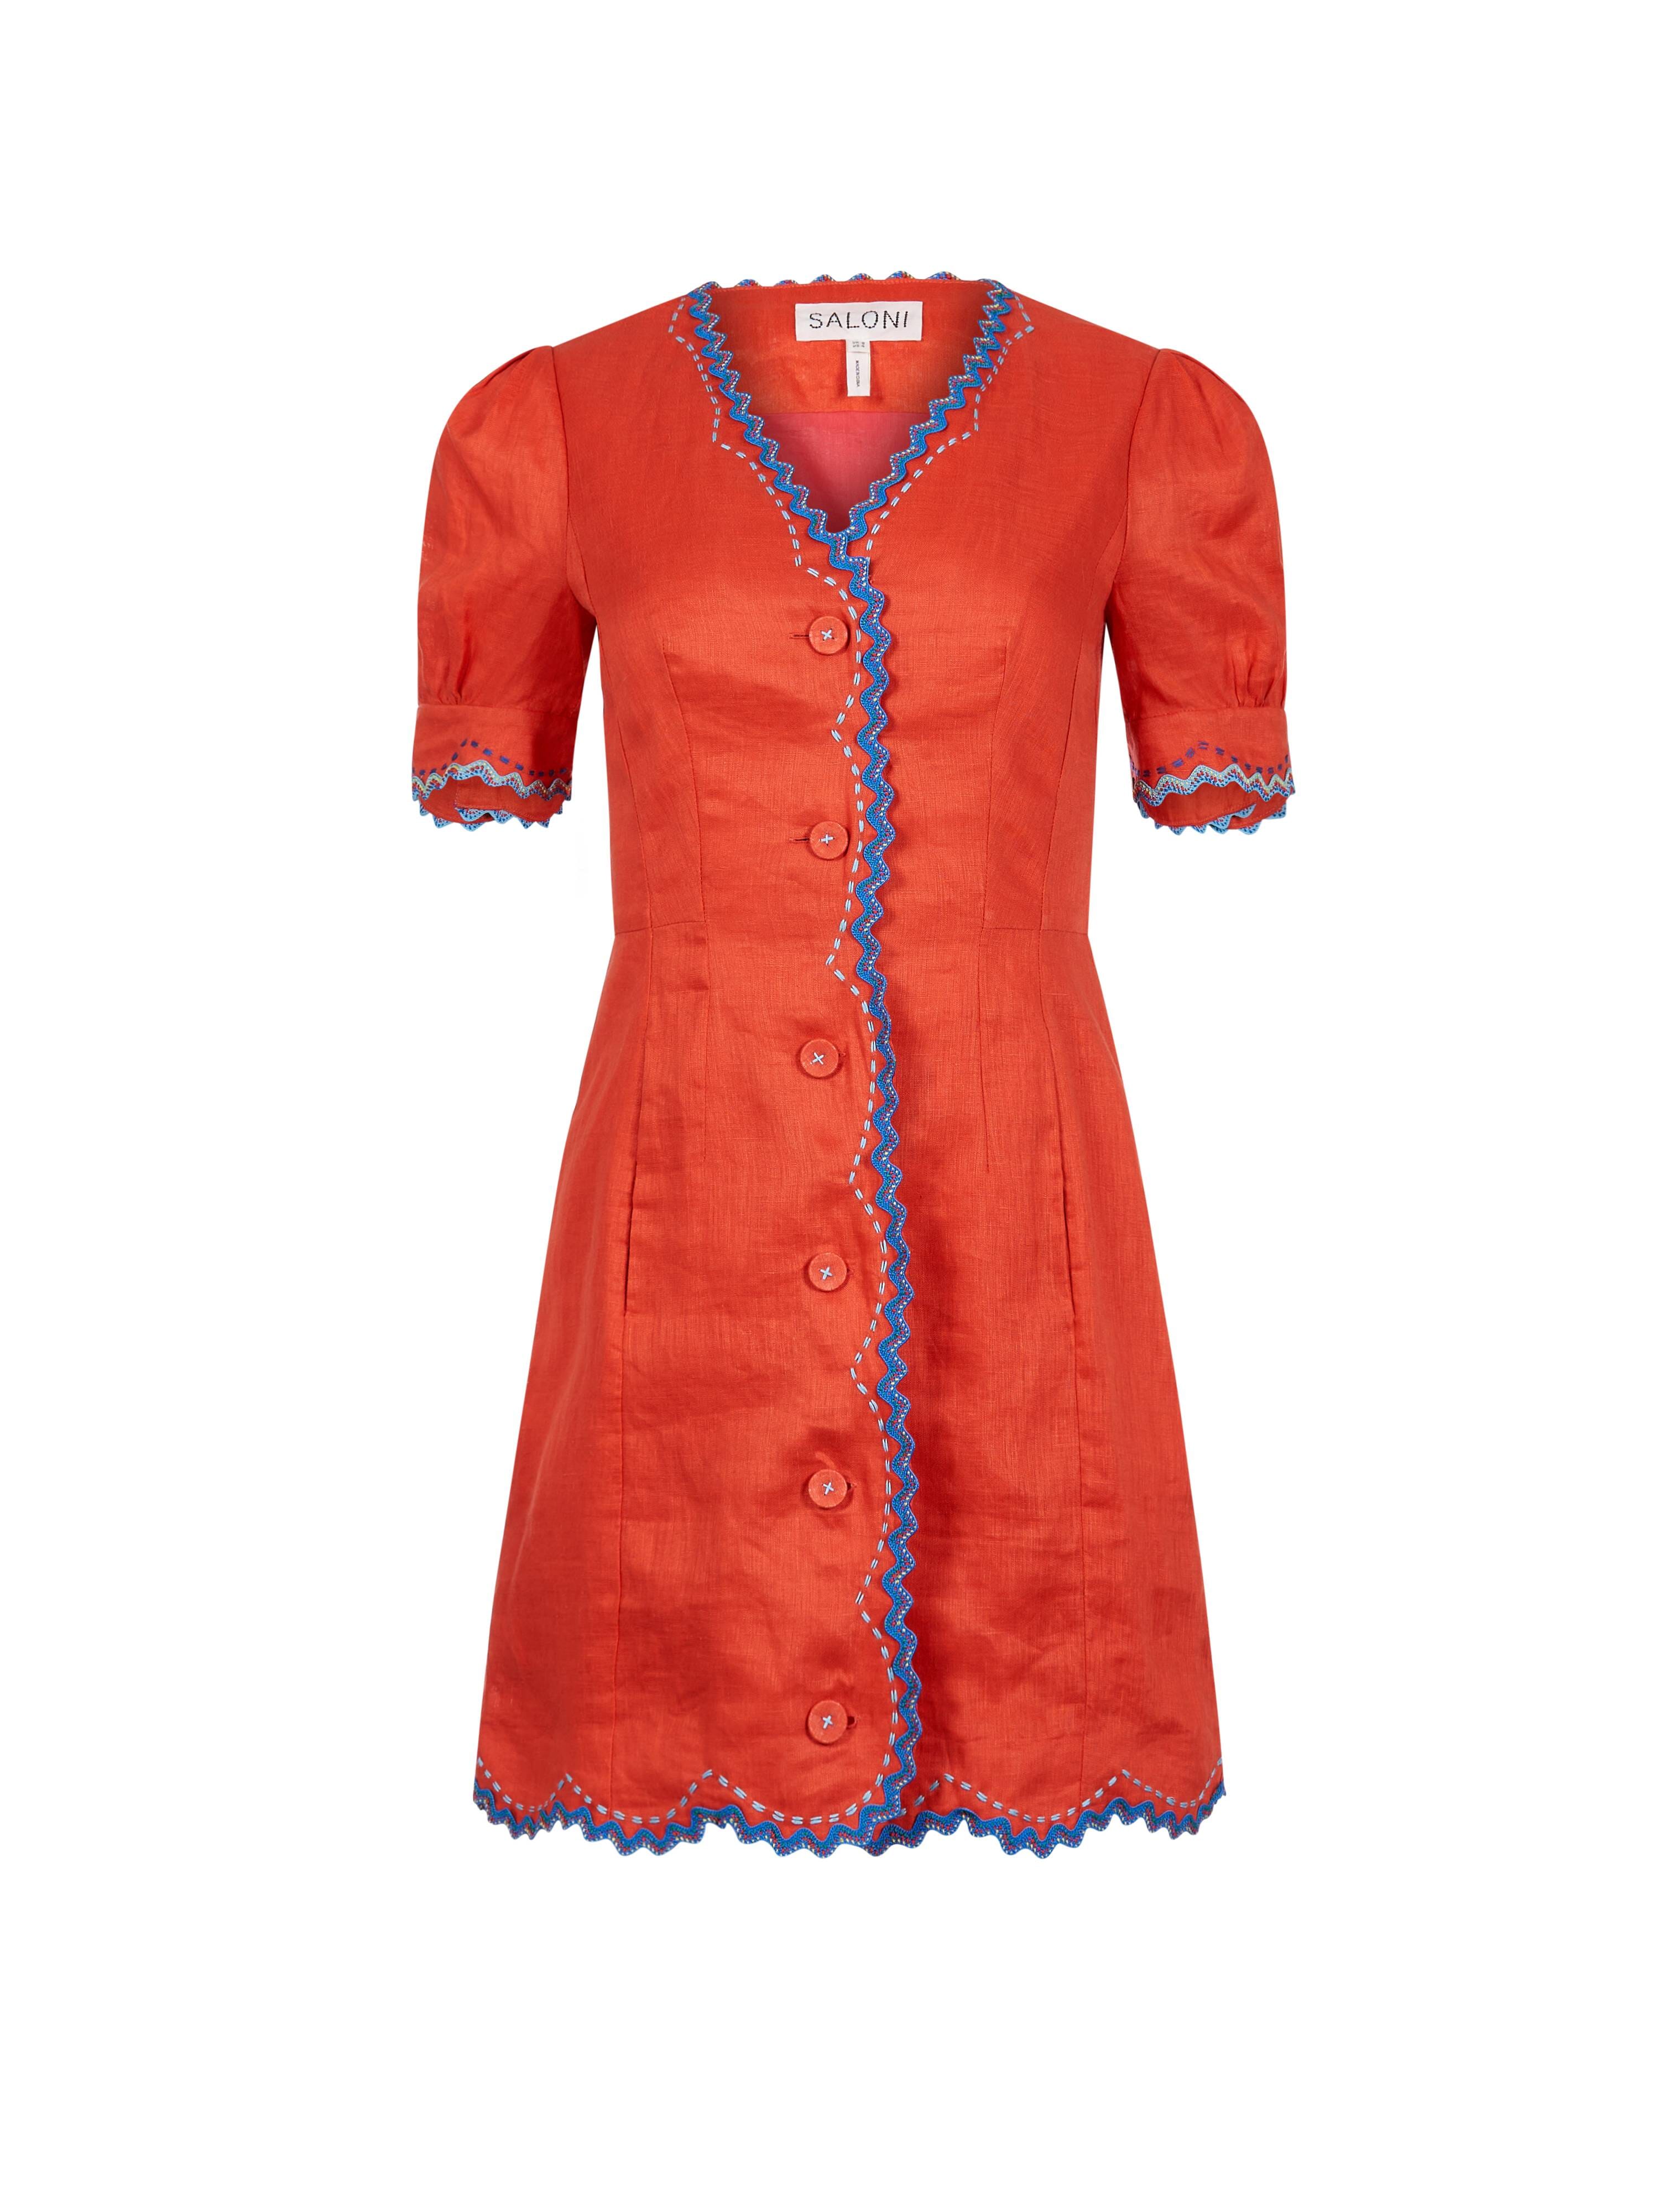 Maje Women Button Down Denim Dress Blue 100% Cotton Size 3- EUC | eBay